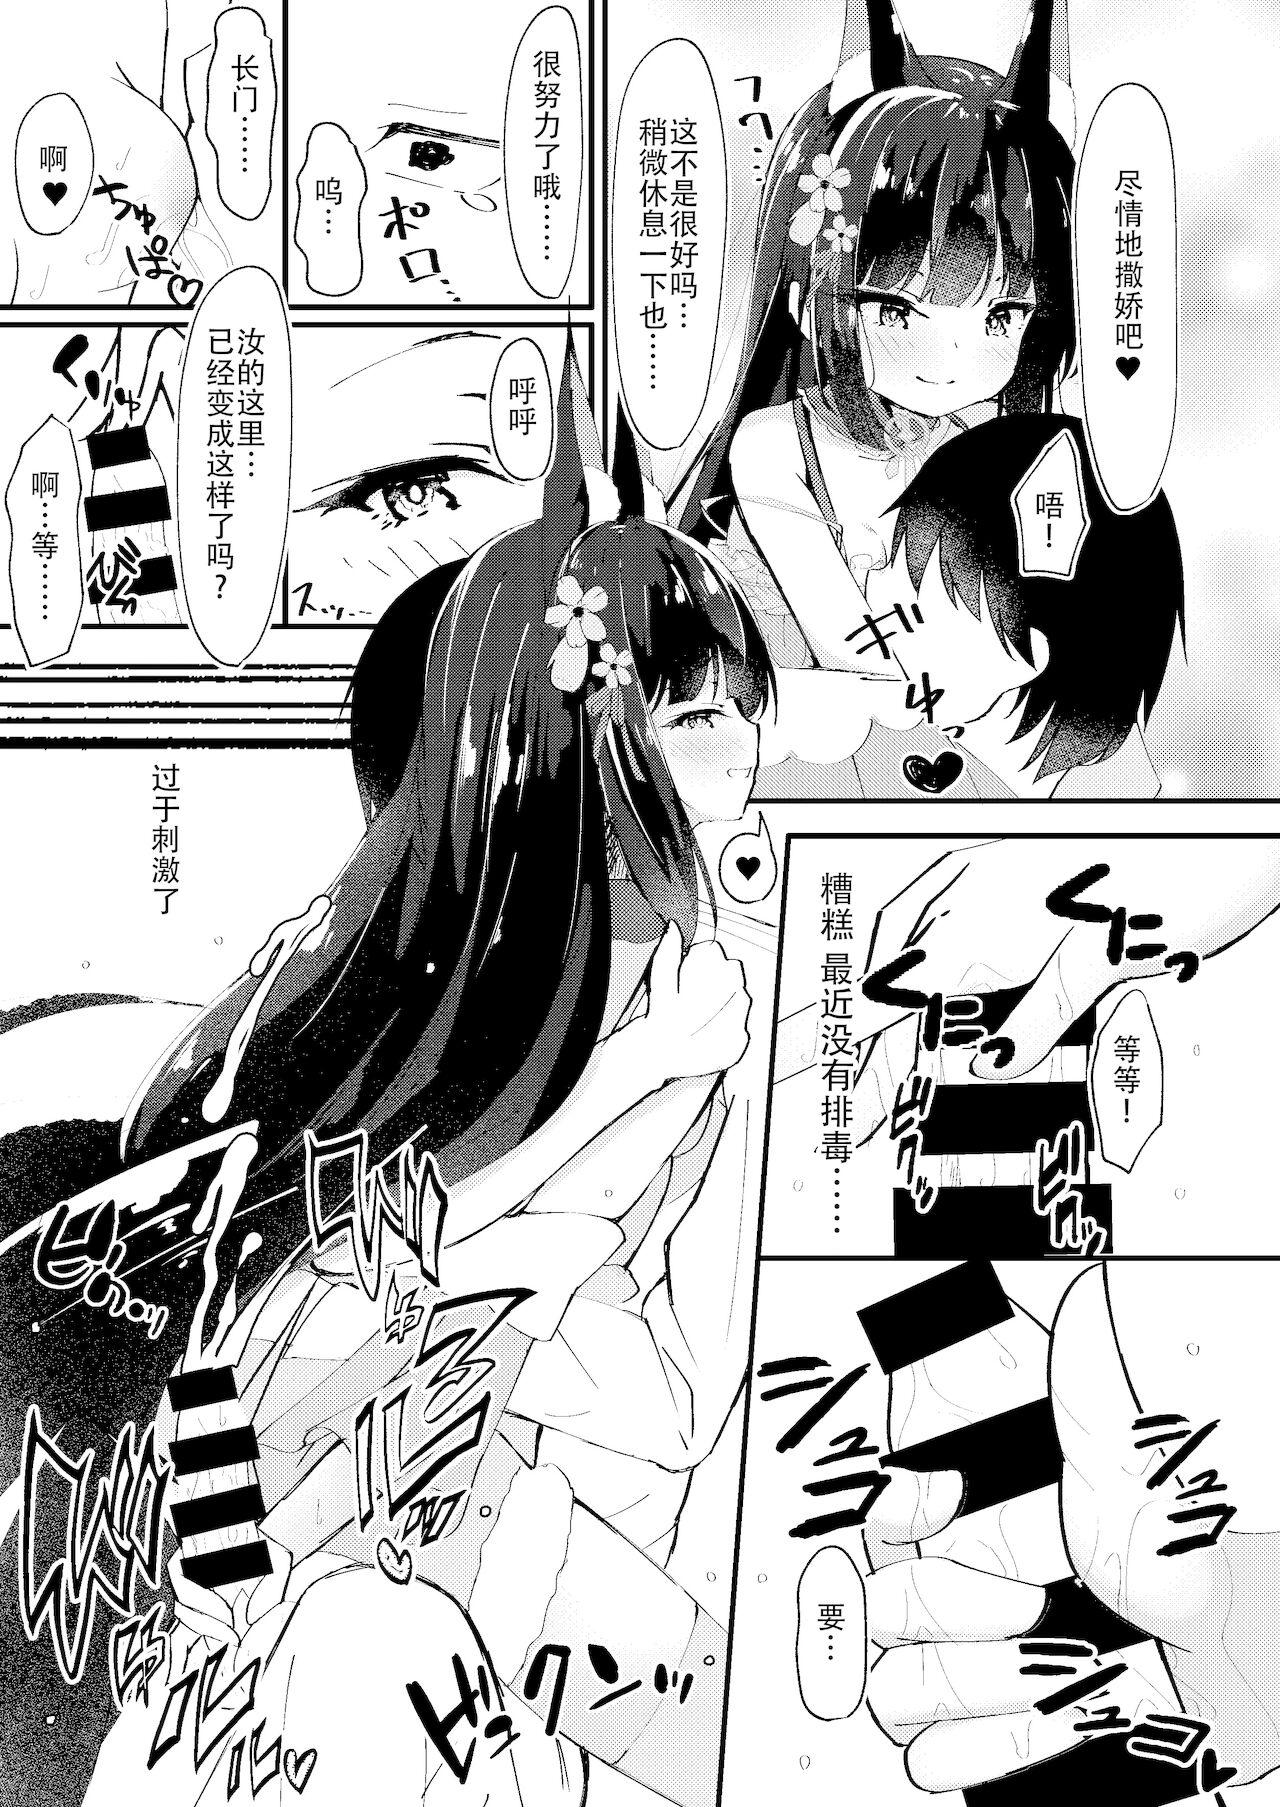 Inked Amae Sasete Nagato-sama | 请让我撒娇,长门大人 - Azur lane Lesbian Porn - Page 6